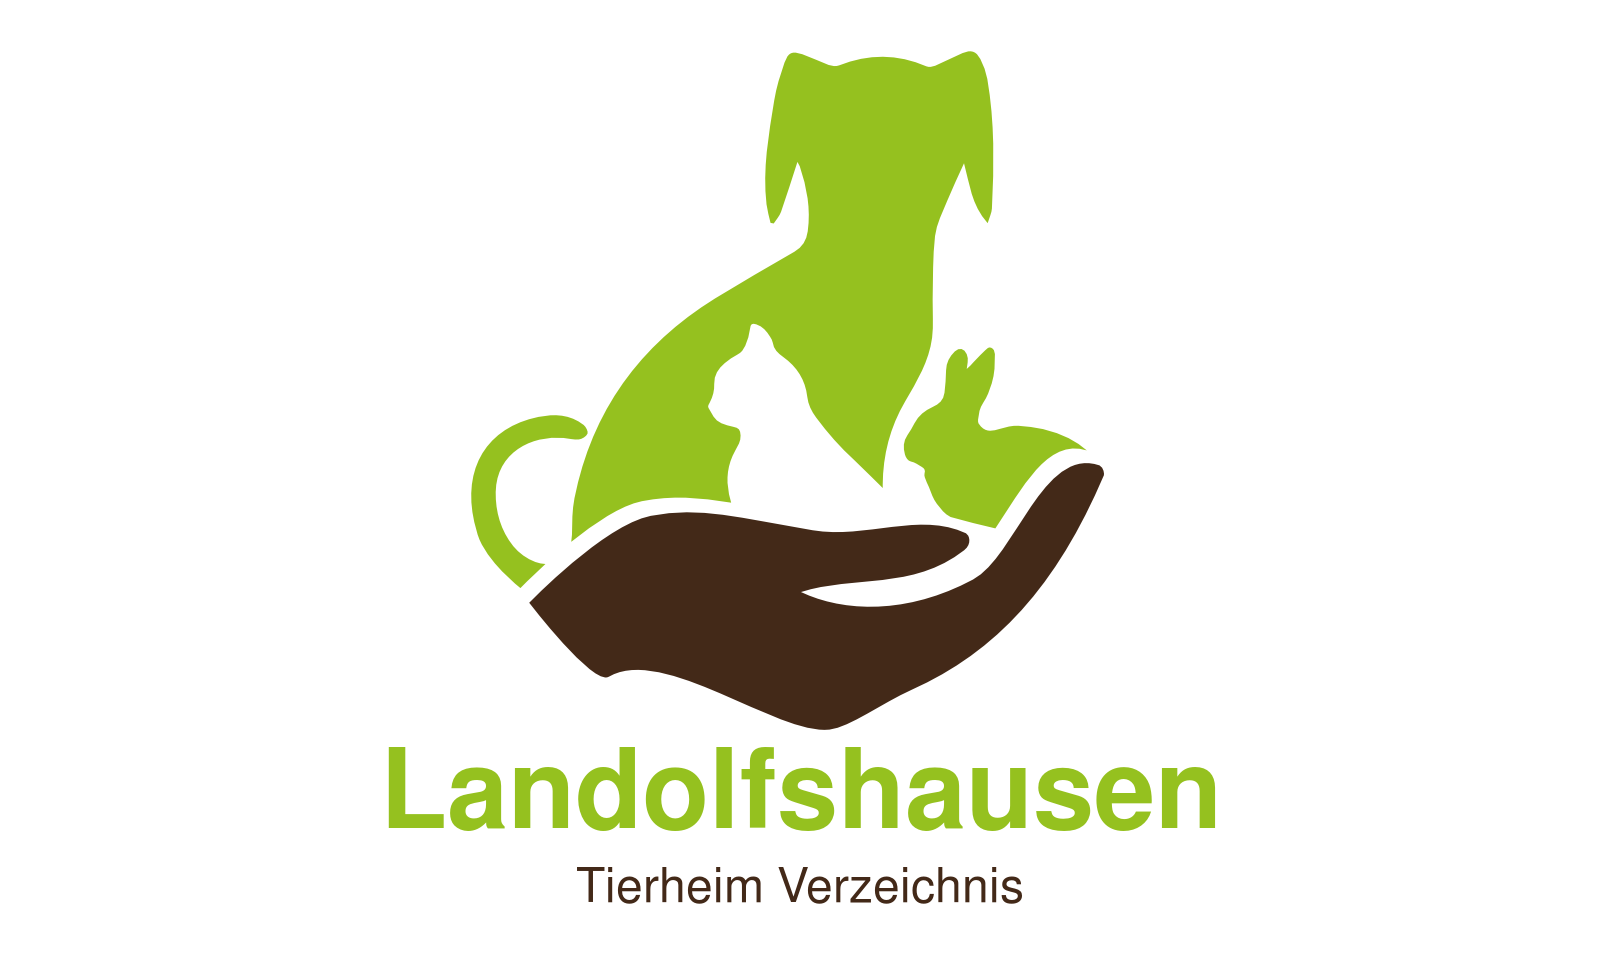 Tierheim Landolfshausen